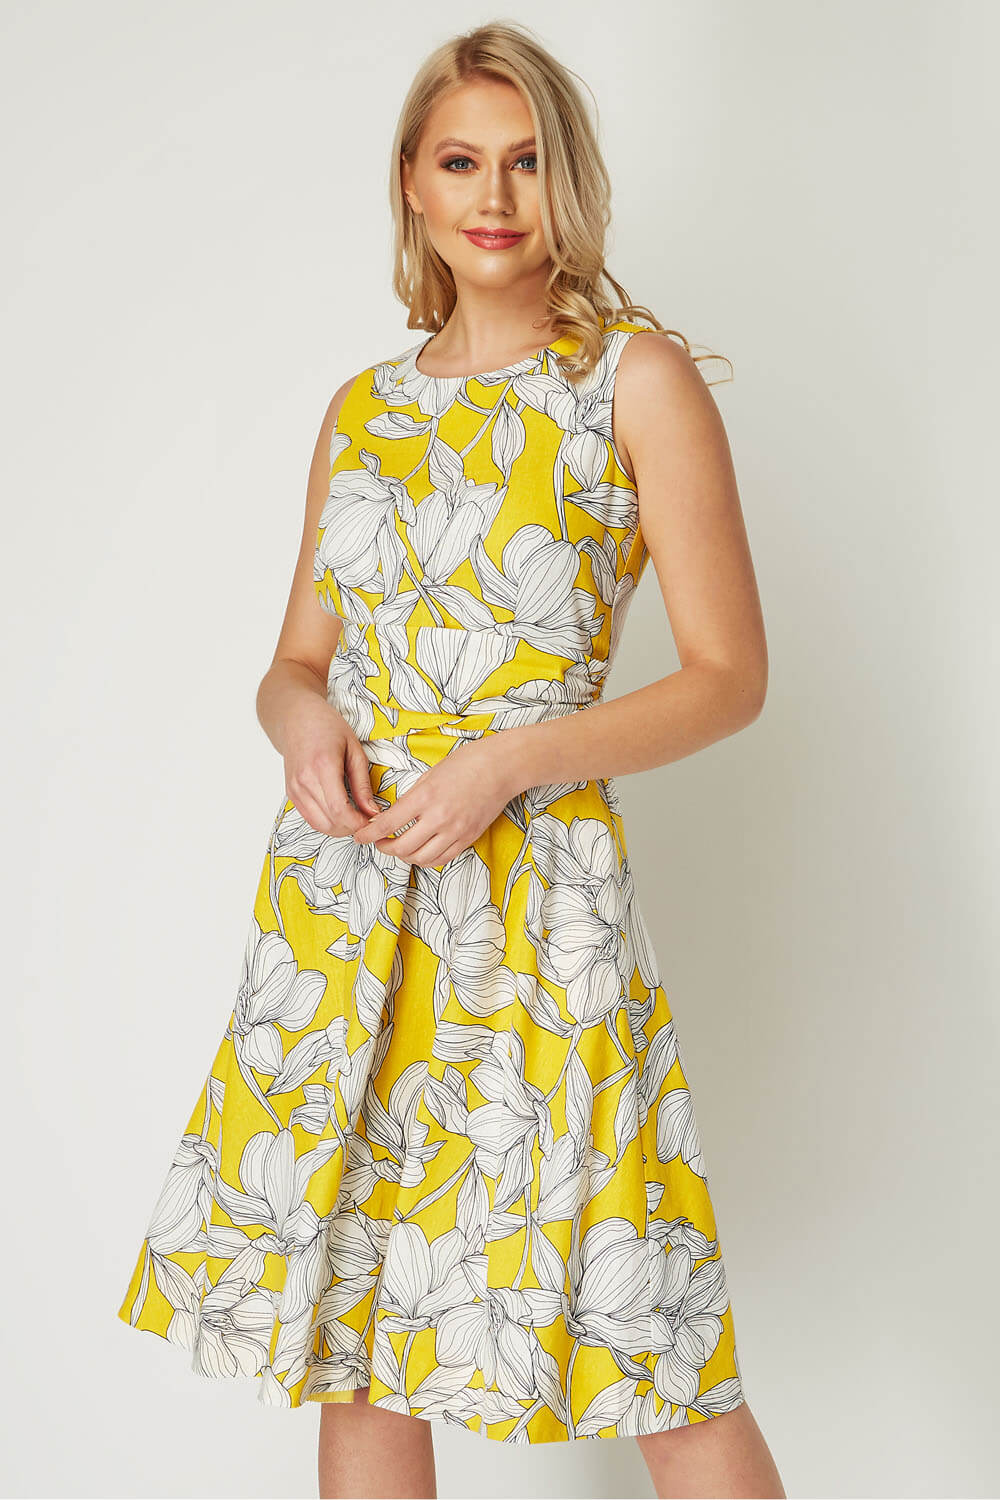 Floral Tie Waist Dress in Yellow - Roman Originals UK